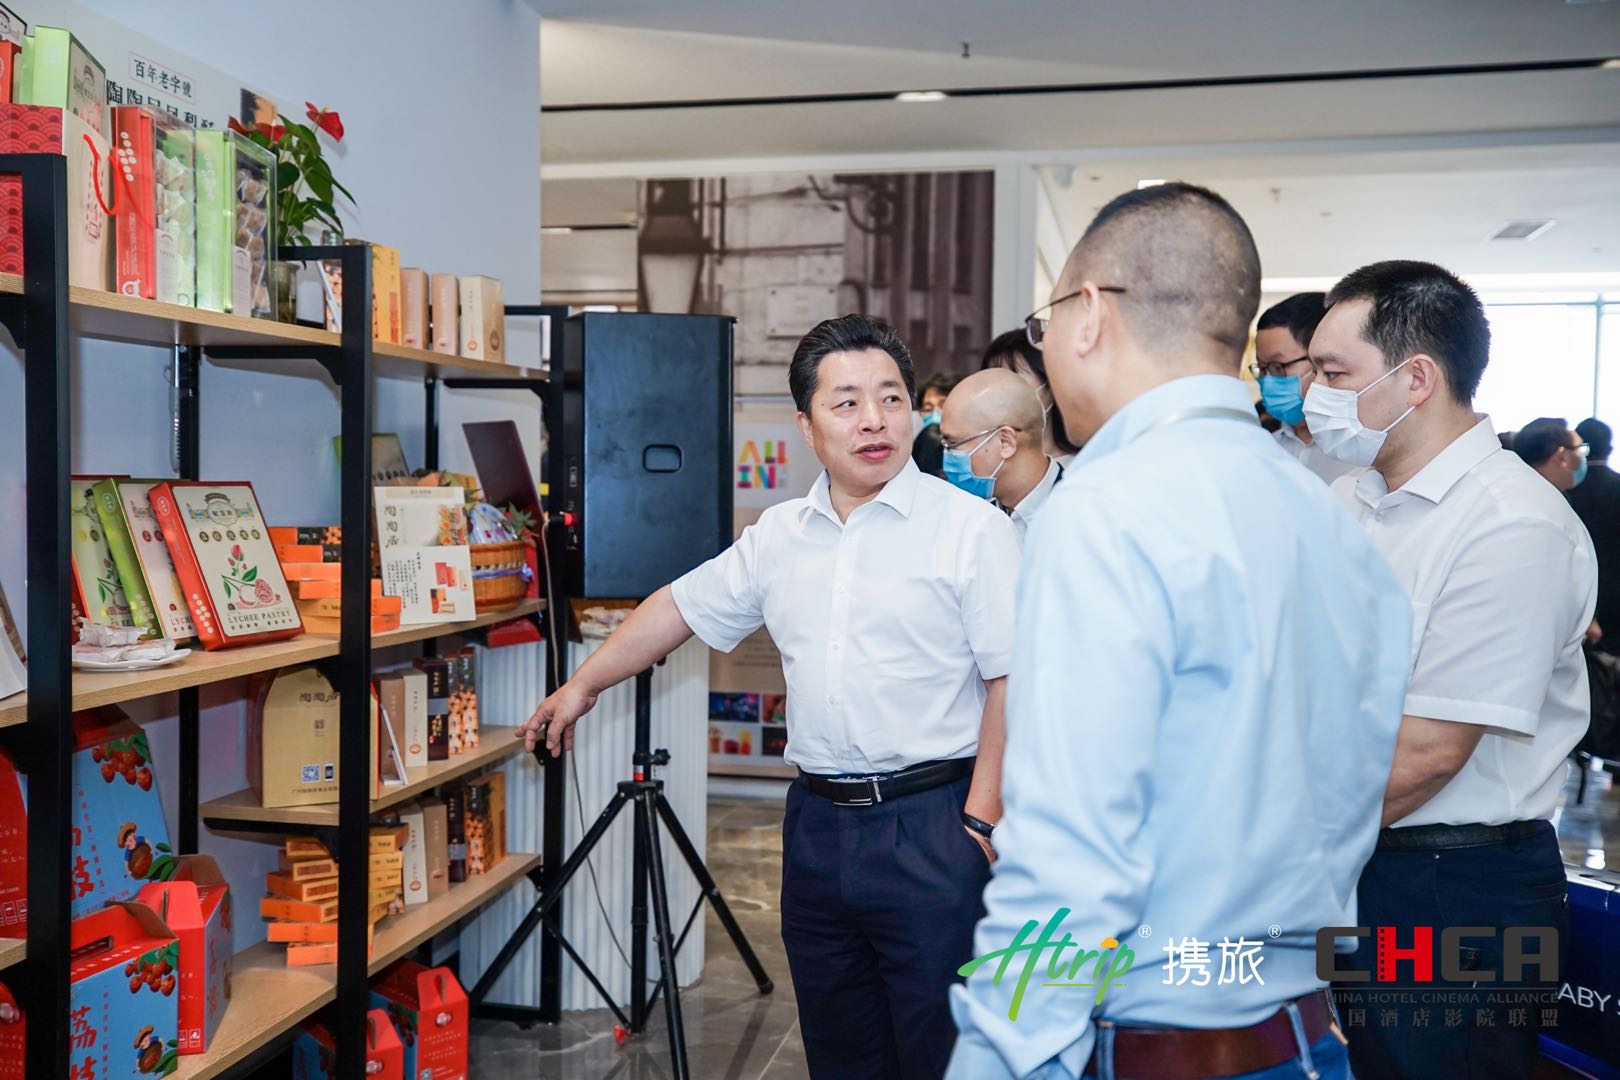 广州携旅科技成功举办“AI新基建助力大文旅产业